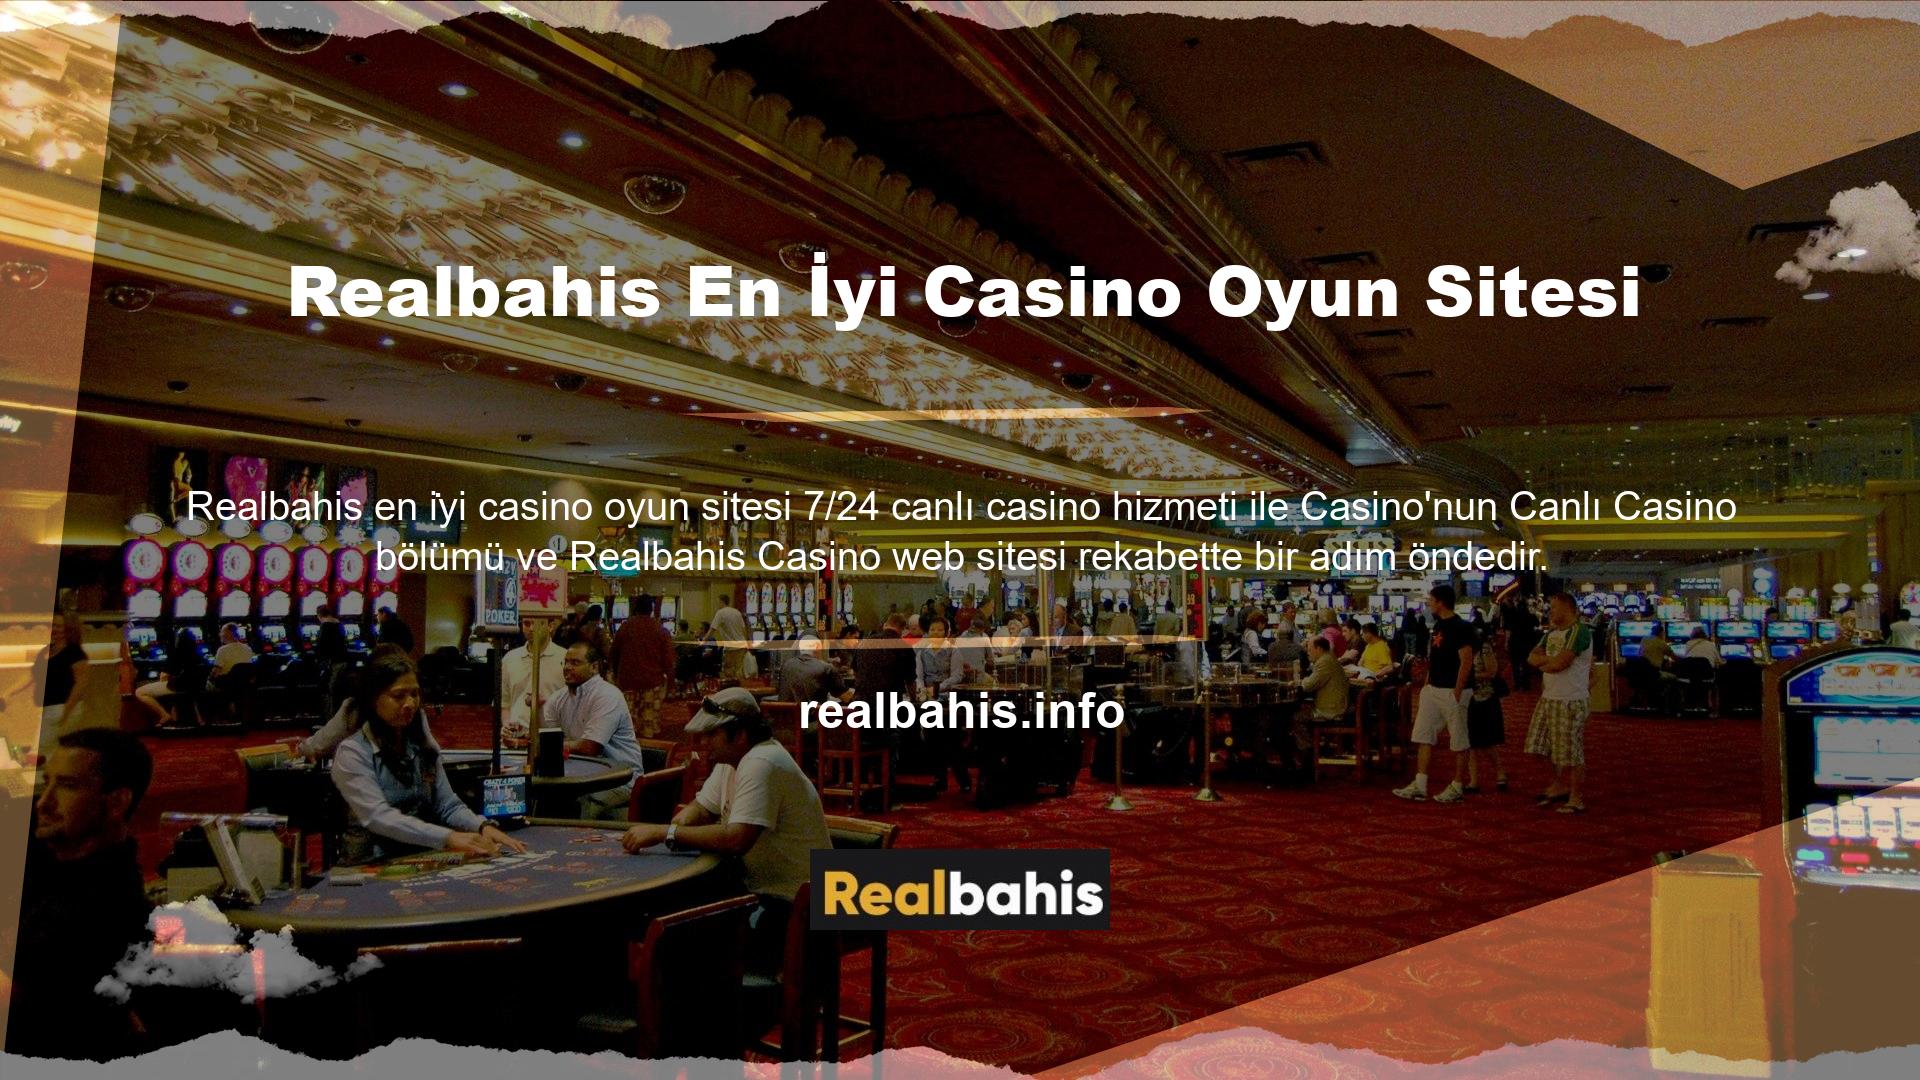 Realbahis Casino harika ödüllerden fazlasını sunan en iyi casino sitesidir